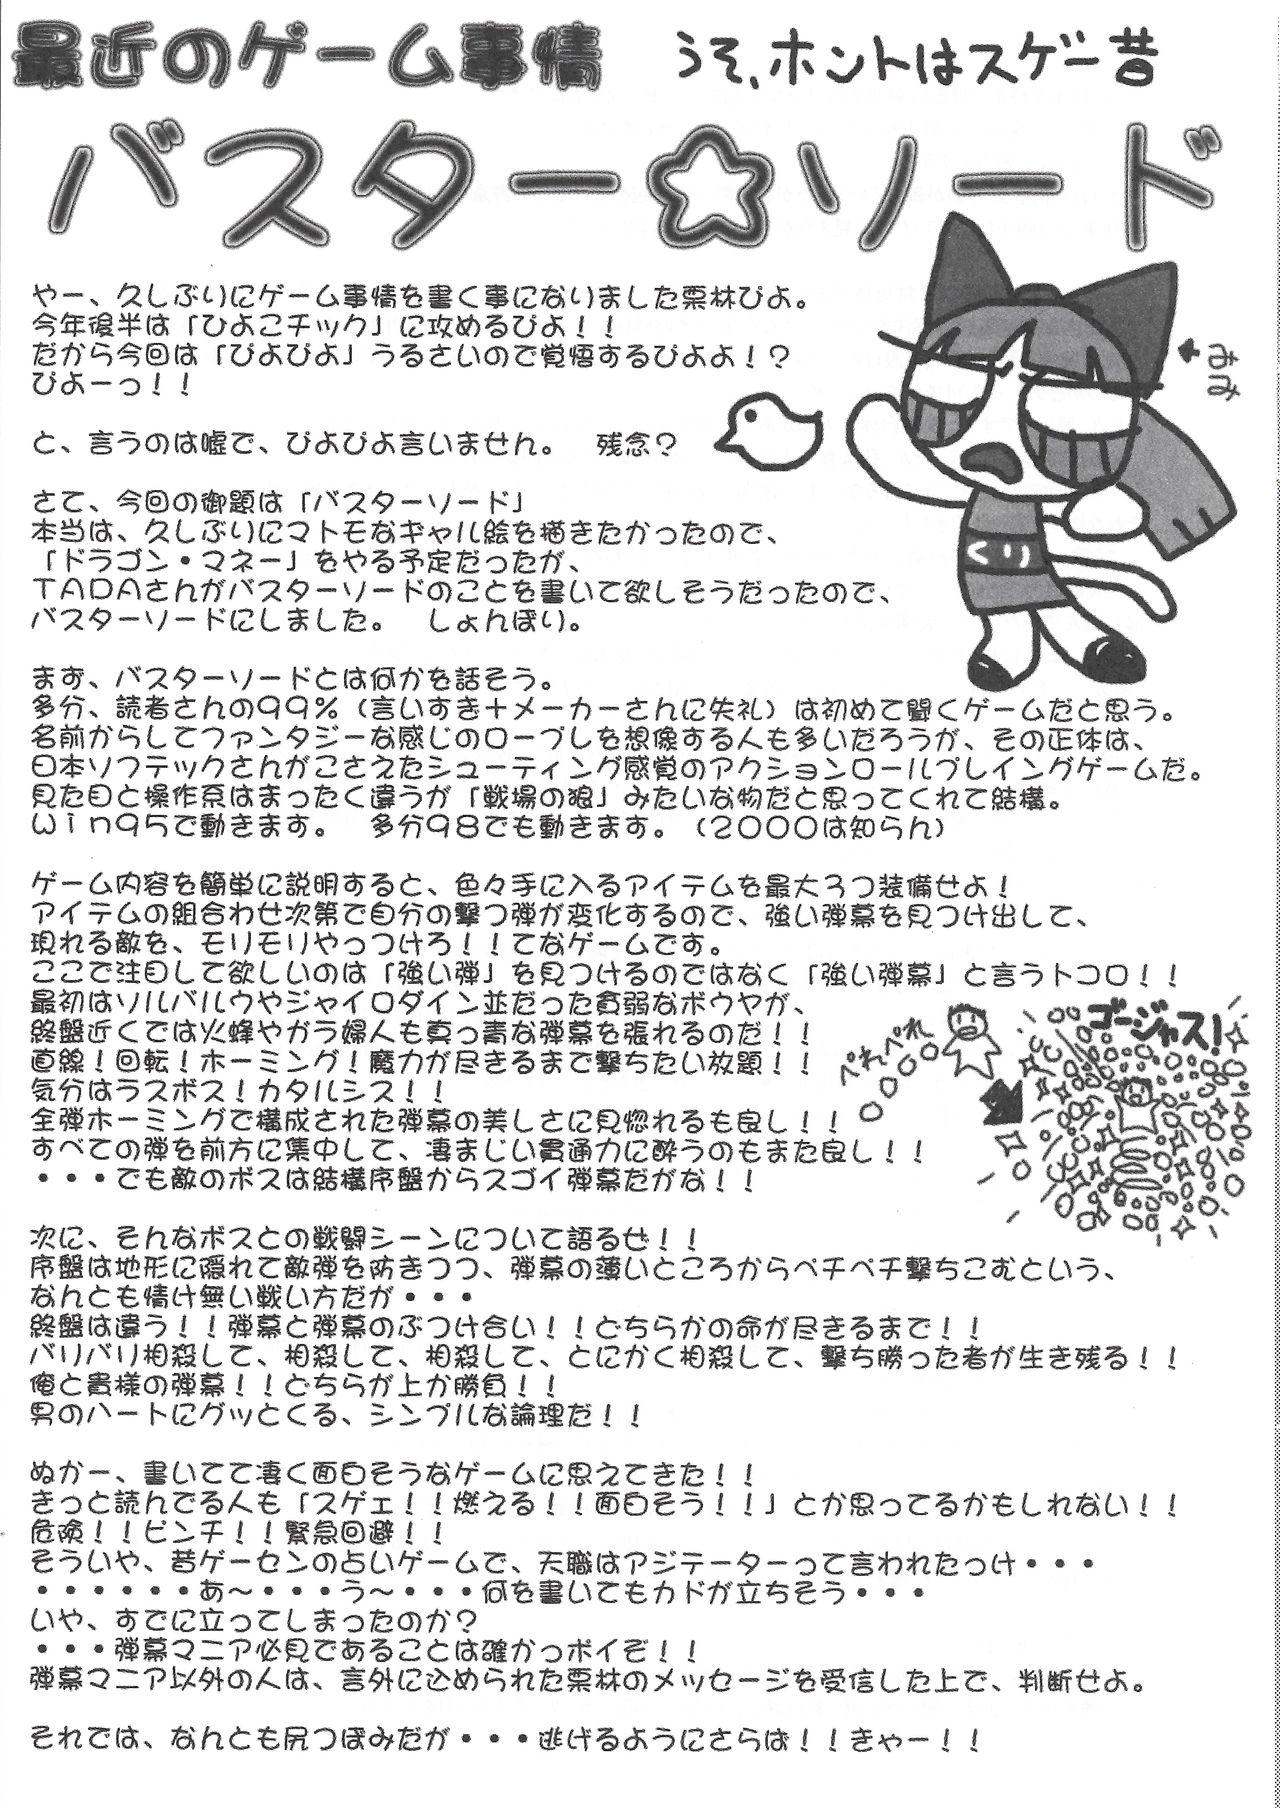 Arisu no Denchi Bakudan Vol. 11 22